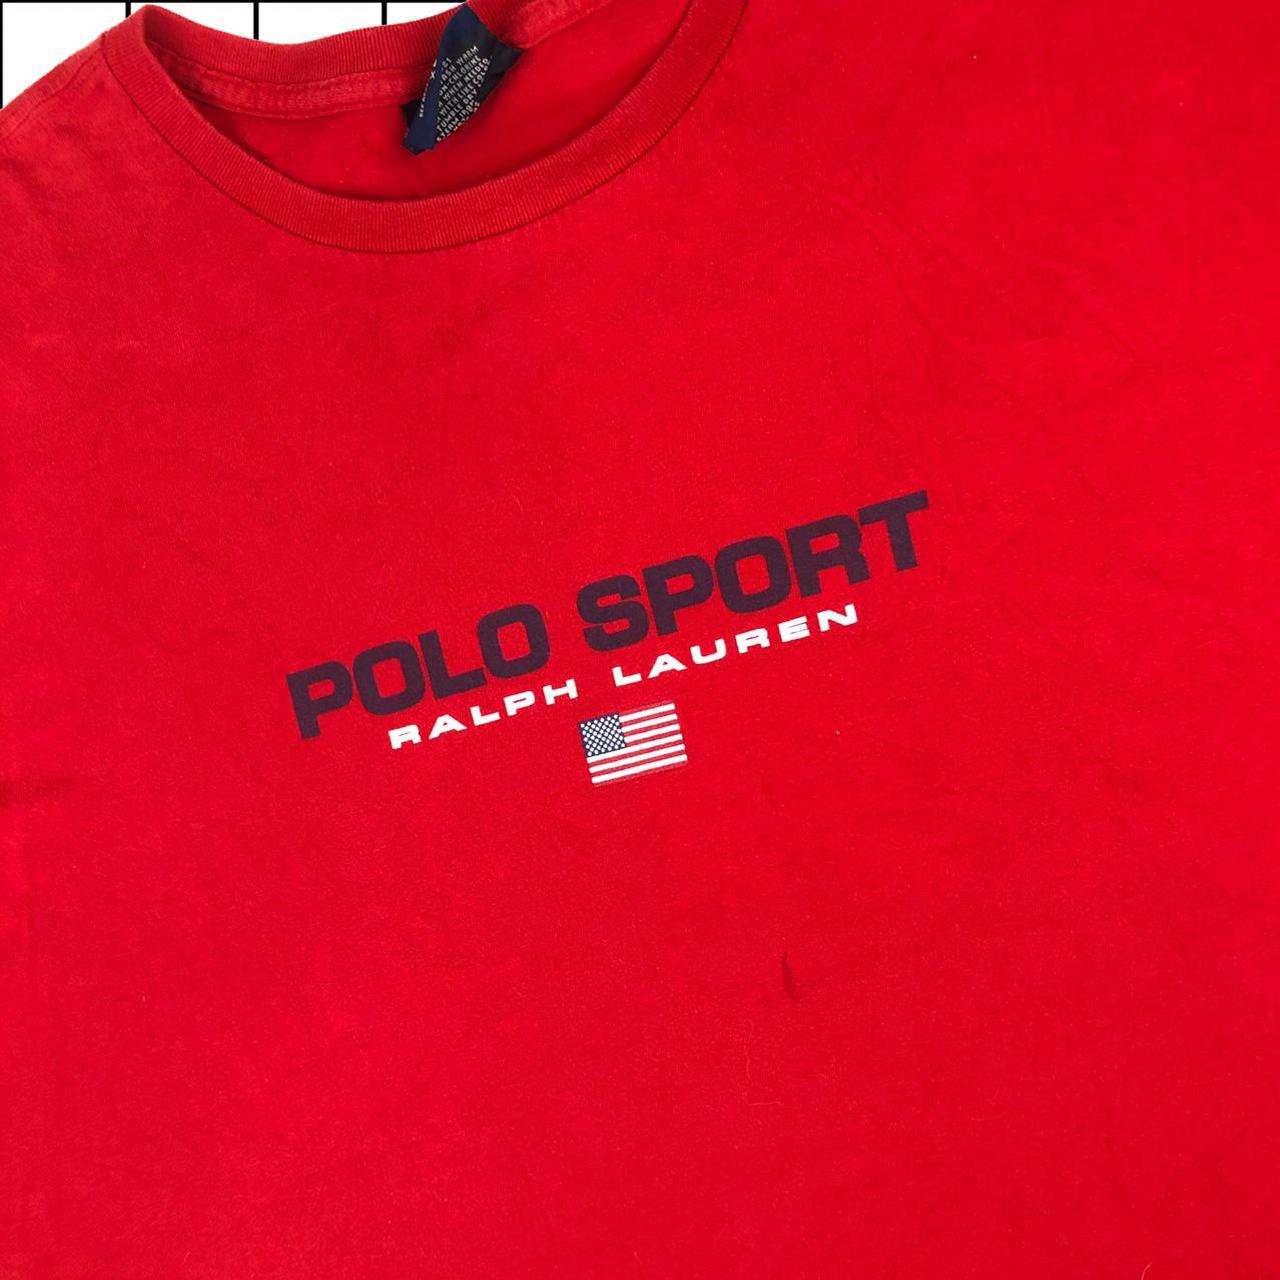 Vintage Polo Sport Ralph Lauren Logo T-shirt... - Depop